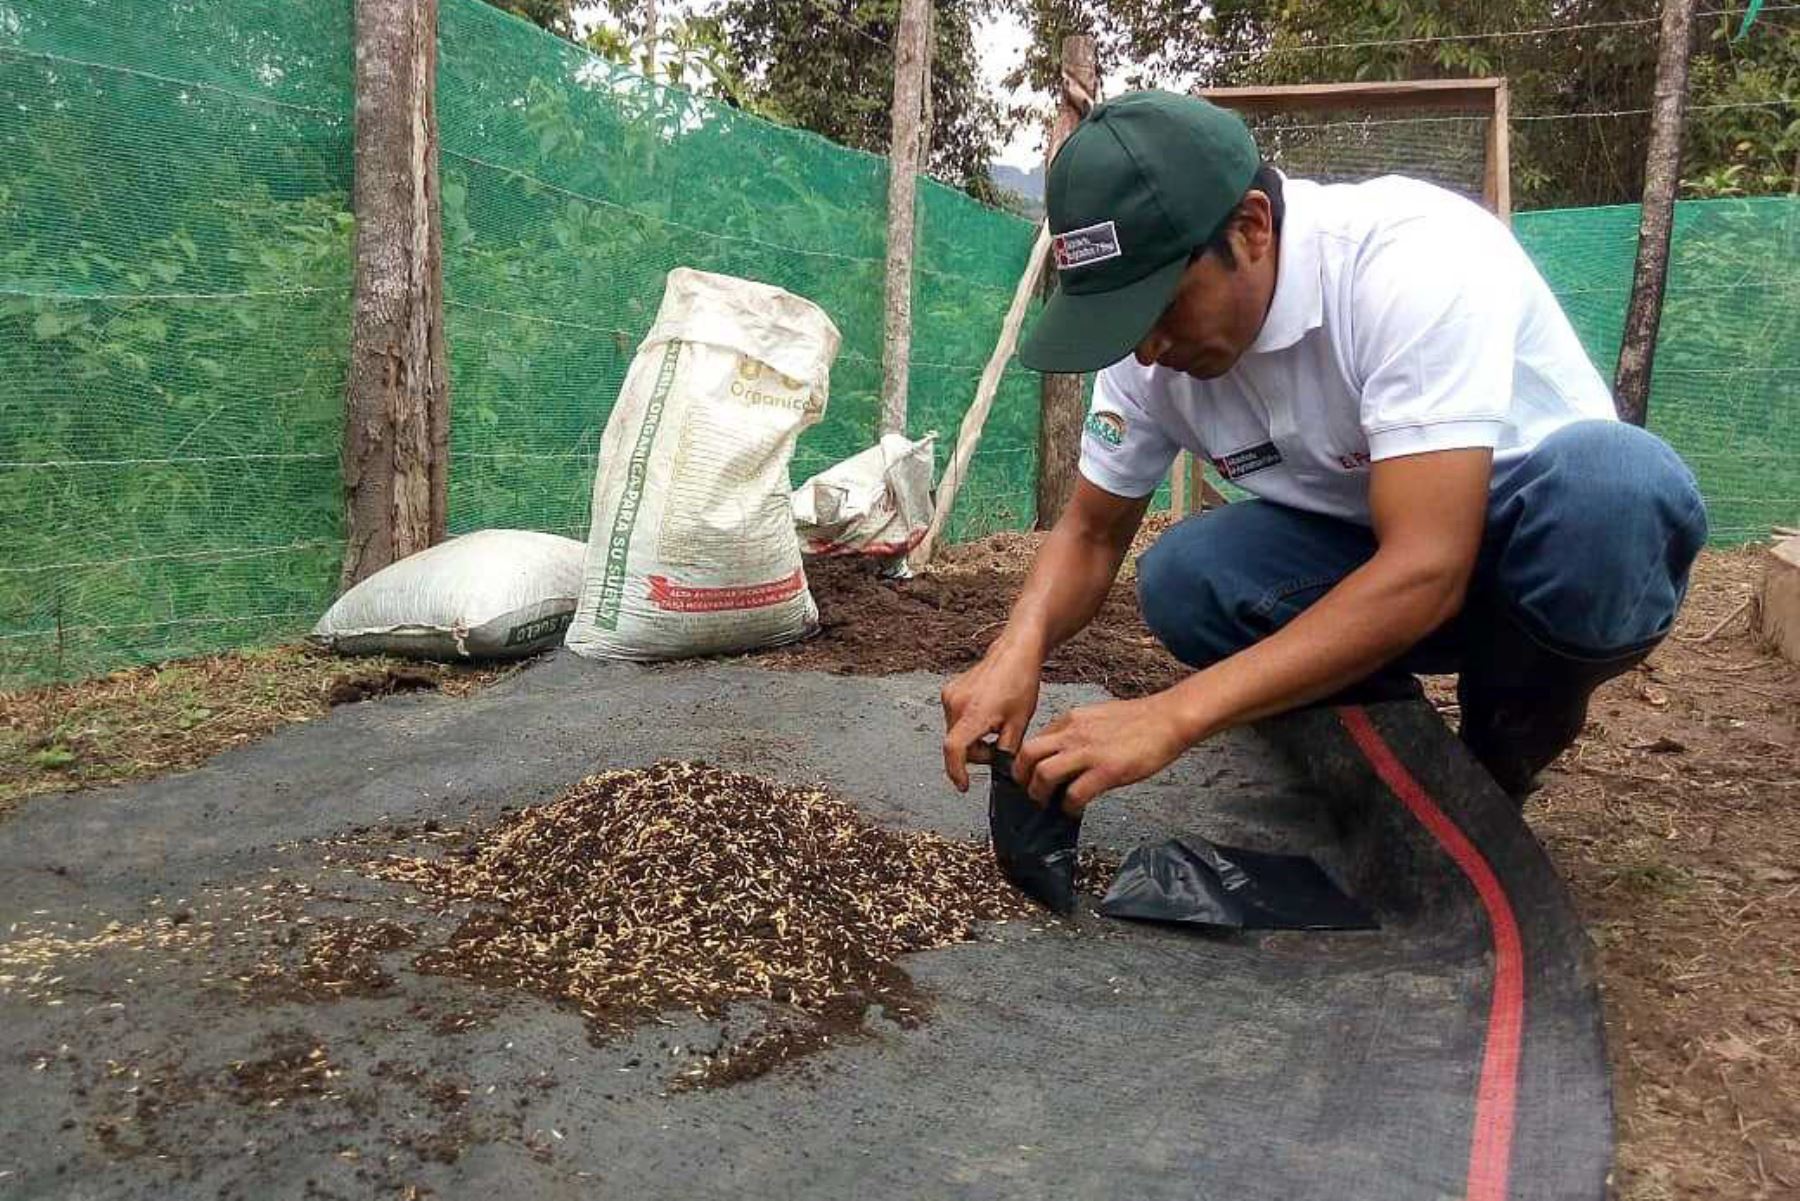 Más de 100 productores de café de la región San Martín, vienen siendo evaluados por el Ministerio de Agricultura y Riego, a través de Agro Rural, la única entidad del sector agricultura acreditada por Sineace para otorgar certificaciones como talentos rurales, en esta oportunidad, en la competencia de Productor de Plantones de Café y Especies Asociadas.